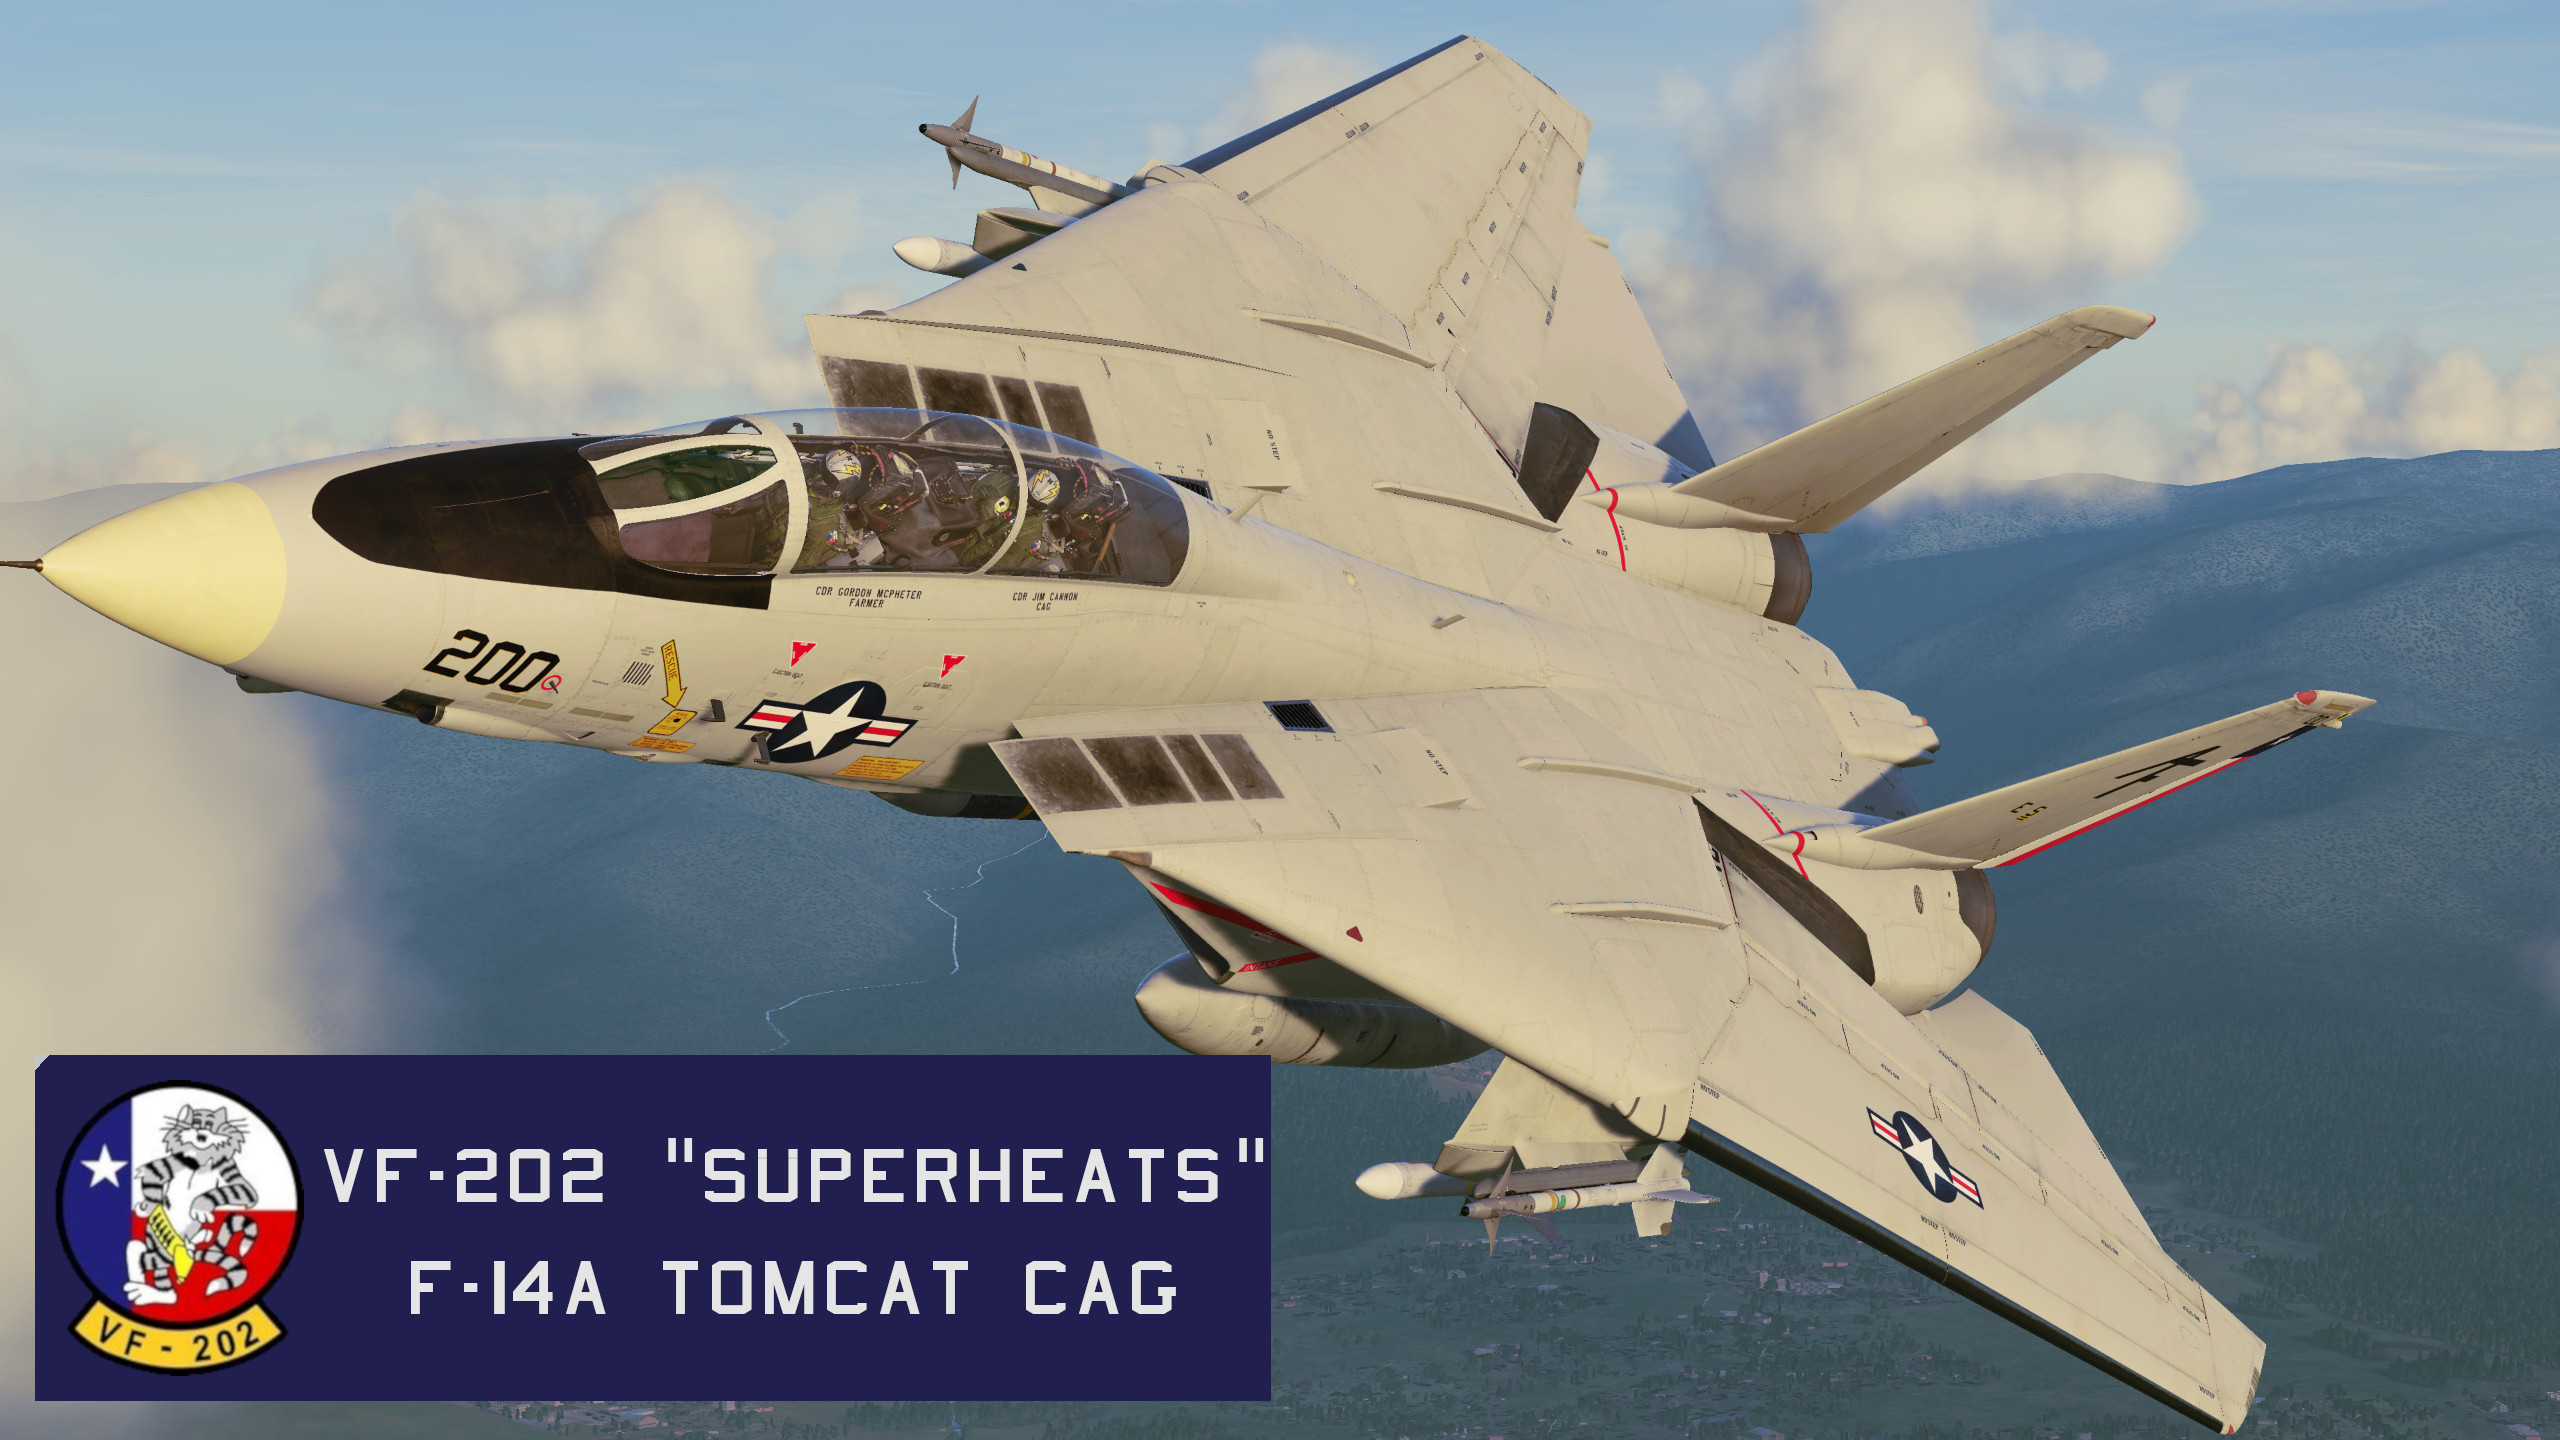 VF-202 "SUPERHEATS" #200 CAG (F-14A)